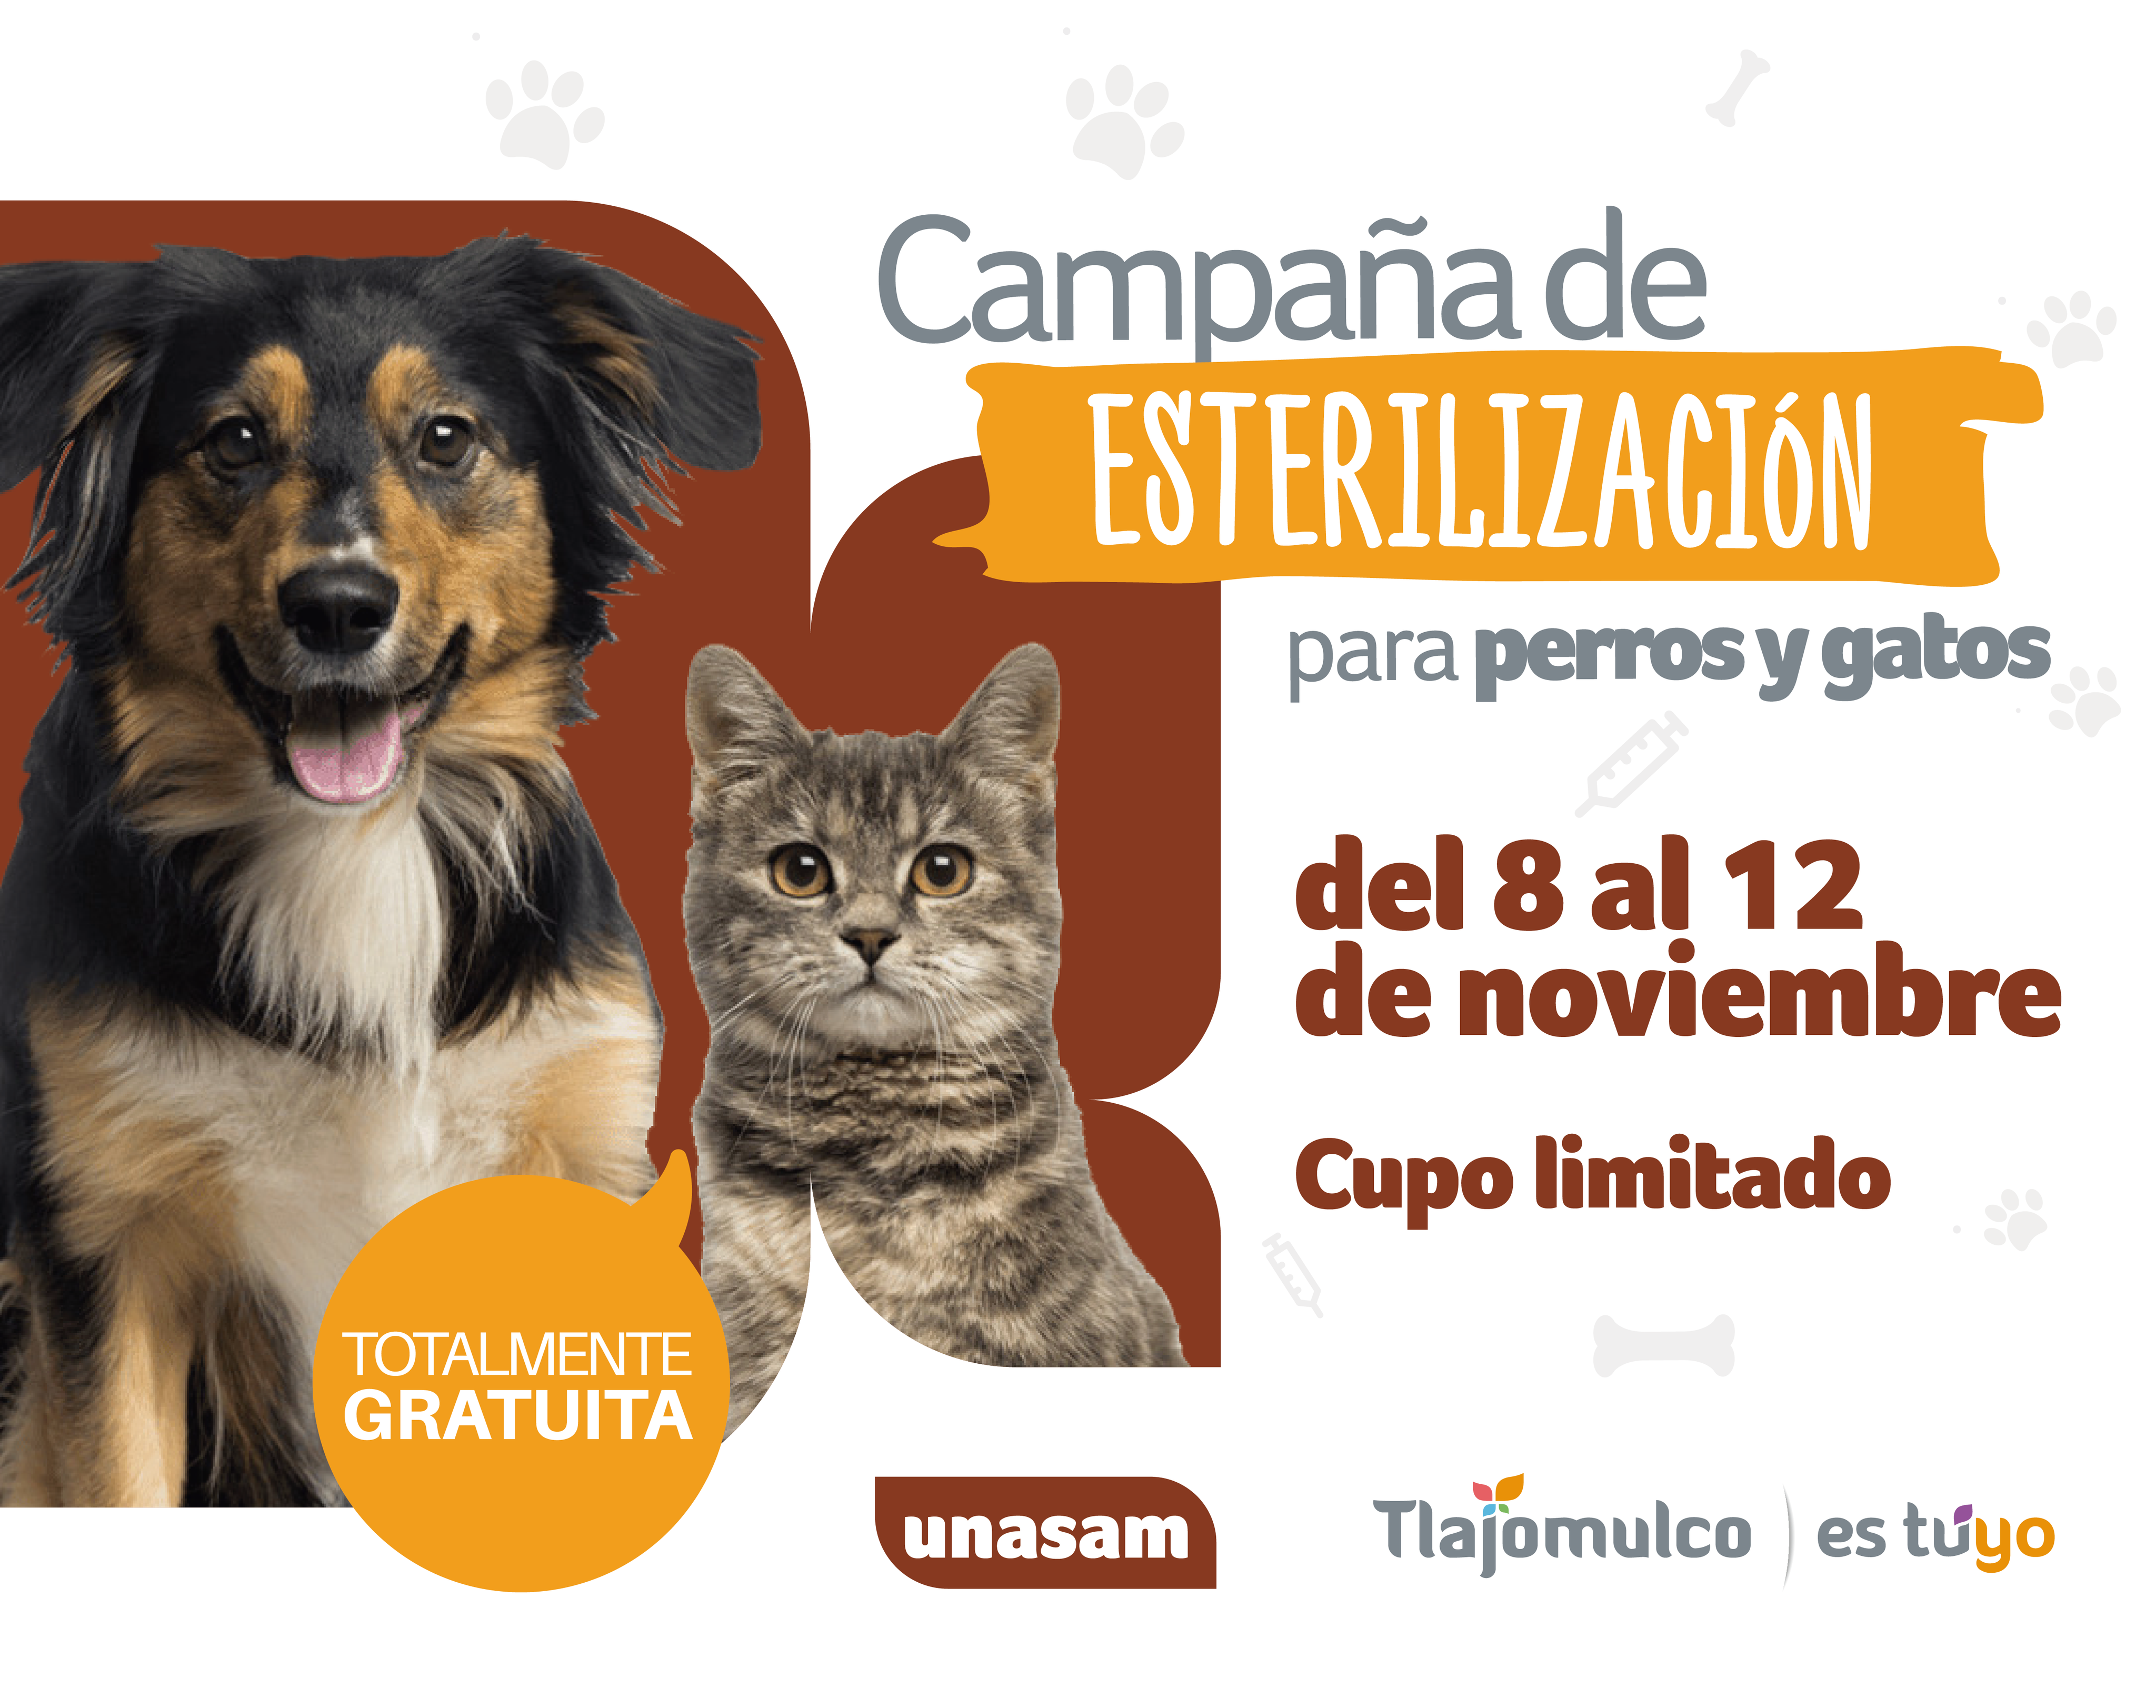 Gobierno Tlajomulco al Twitter: "🐾🐶 Arrancaremos con una campaña de  esterilización gratuita para perros y gatos que se hará en las  instalaciones de la #UNASAMTlajomulco del 8 al 12 de noviembre en